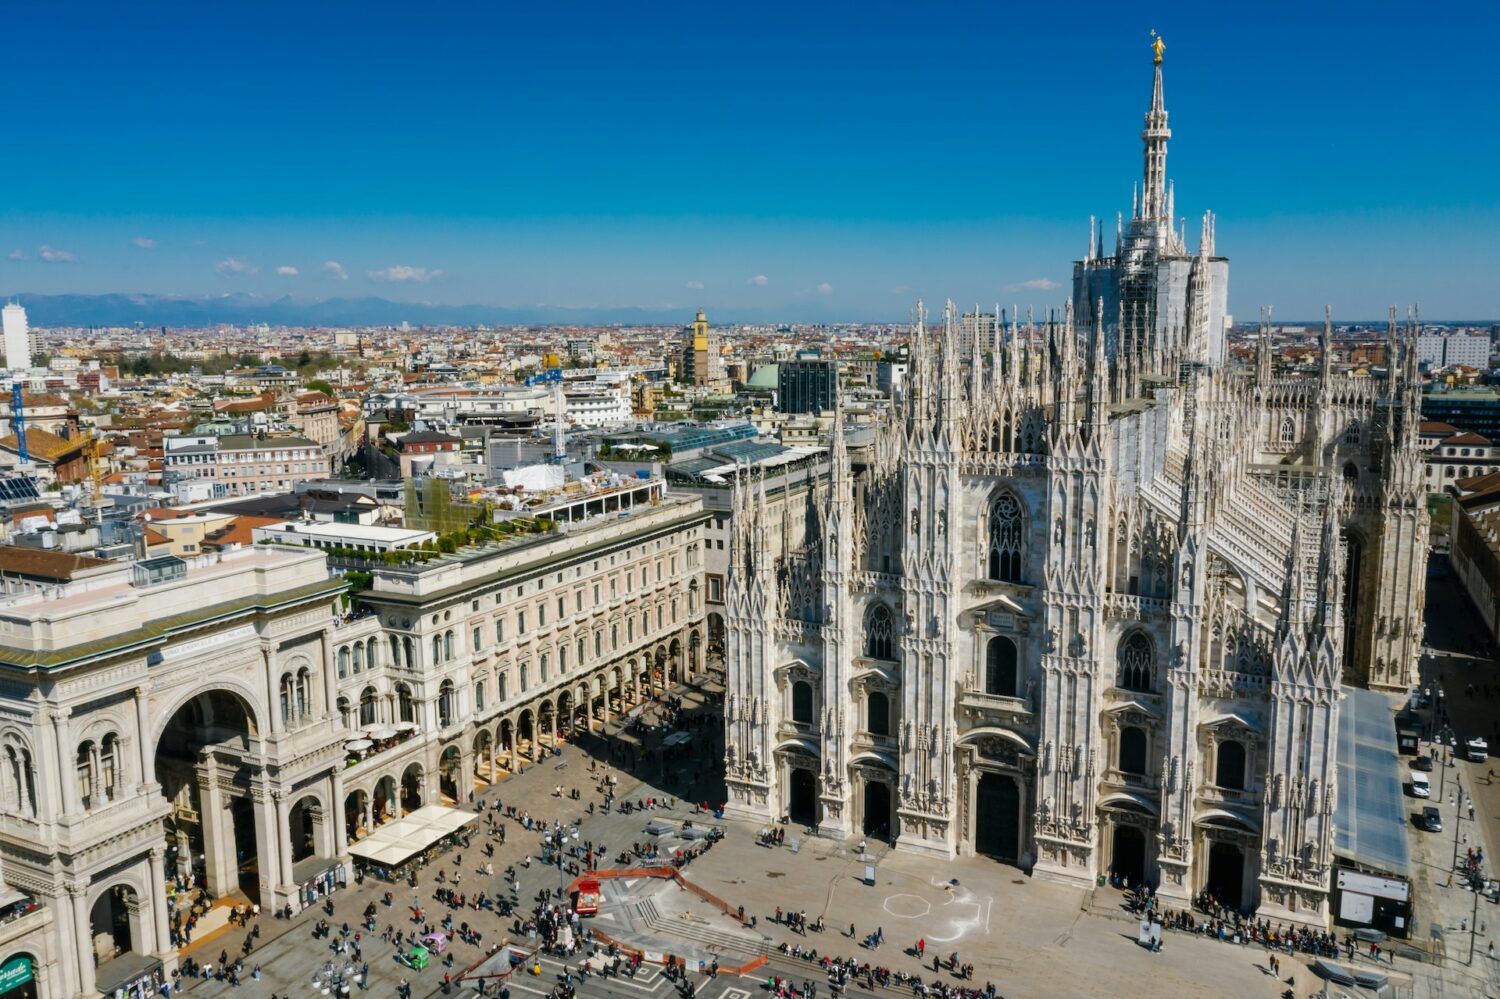 Vista aérea da Praça Duomo com foco na Catedral de Milão em estilo gótico, há um pátio na frente da igreja com muitas pessoas andando, para representar onde ficar em Milão